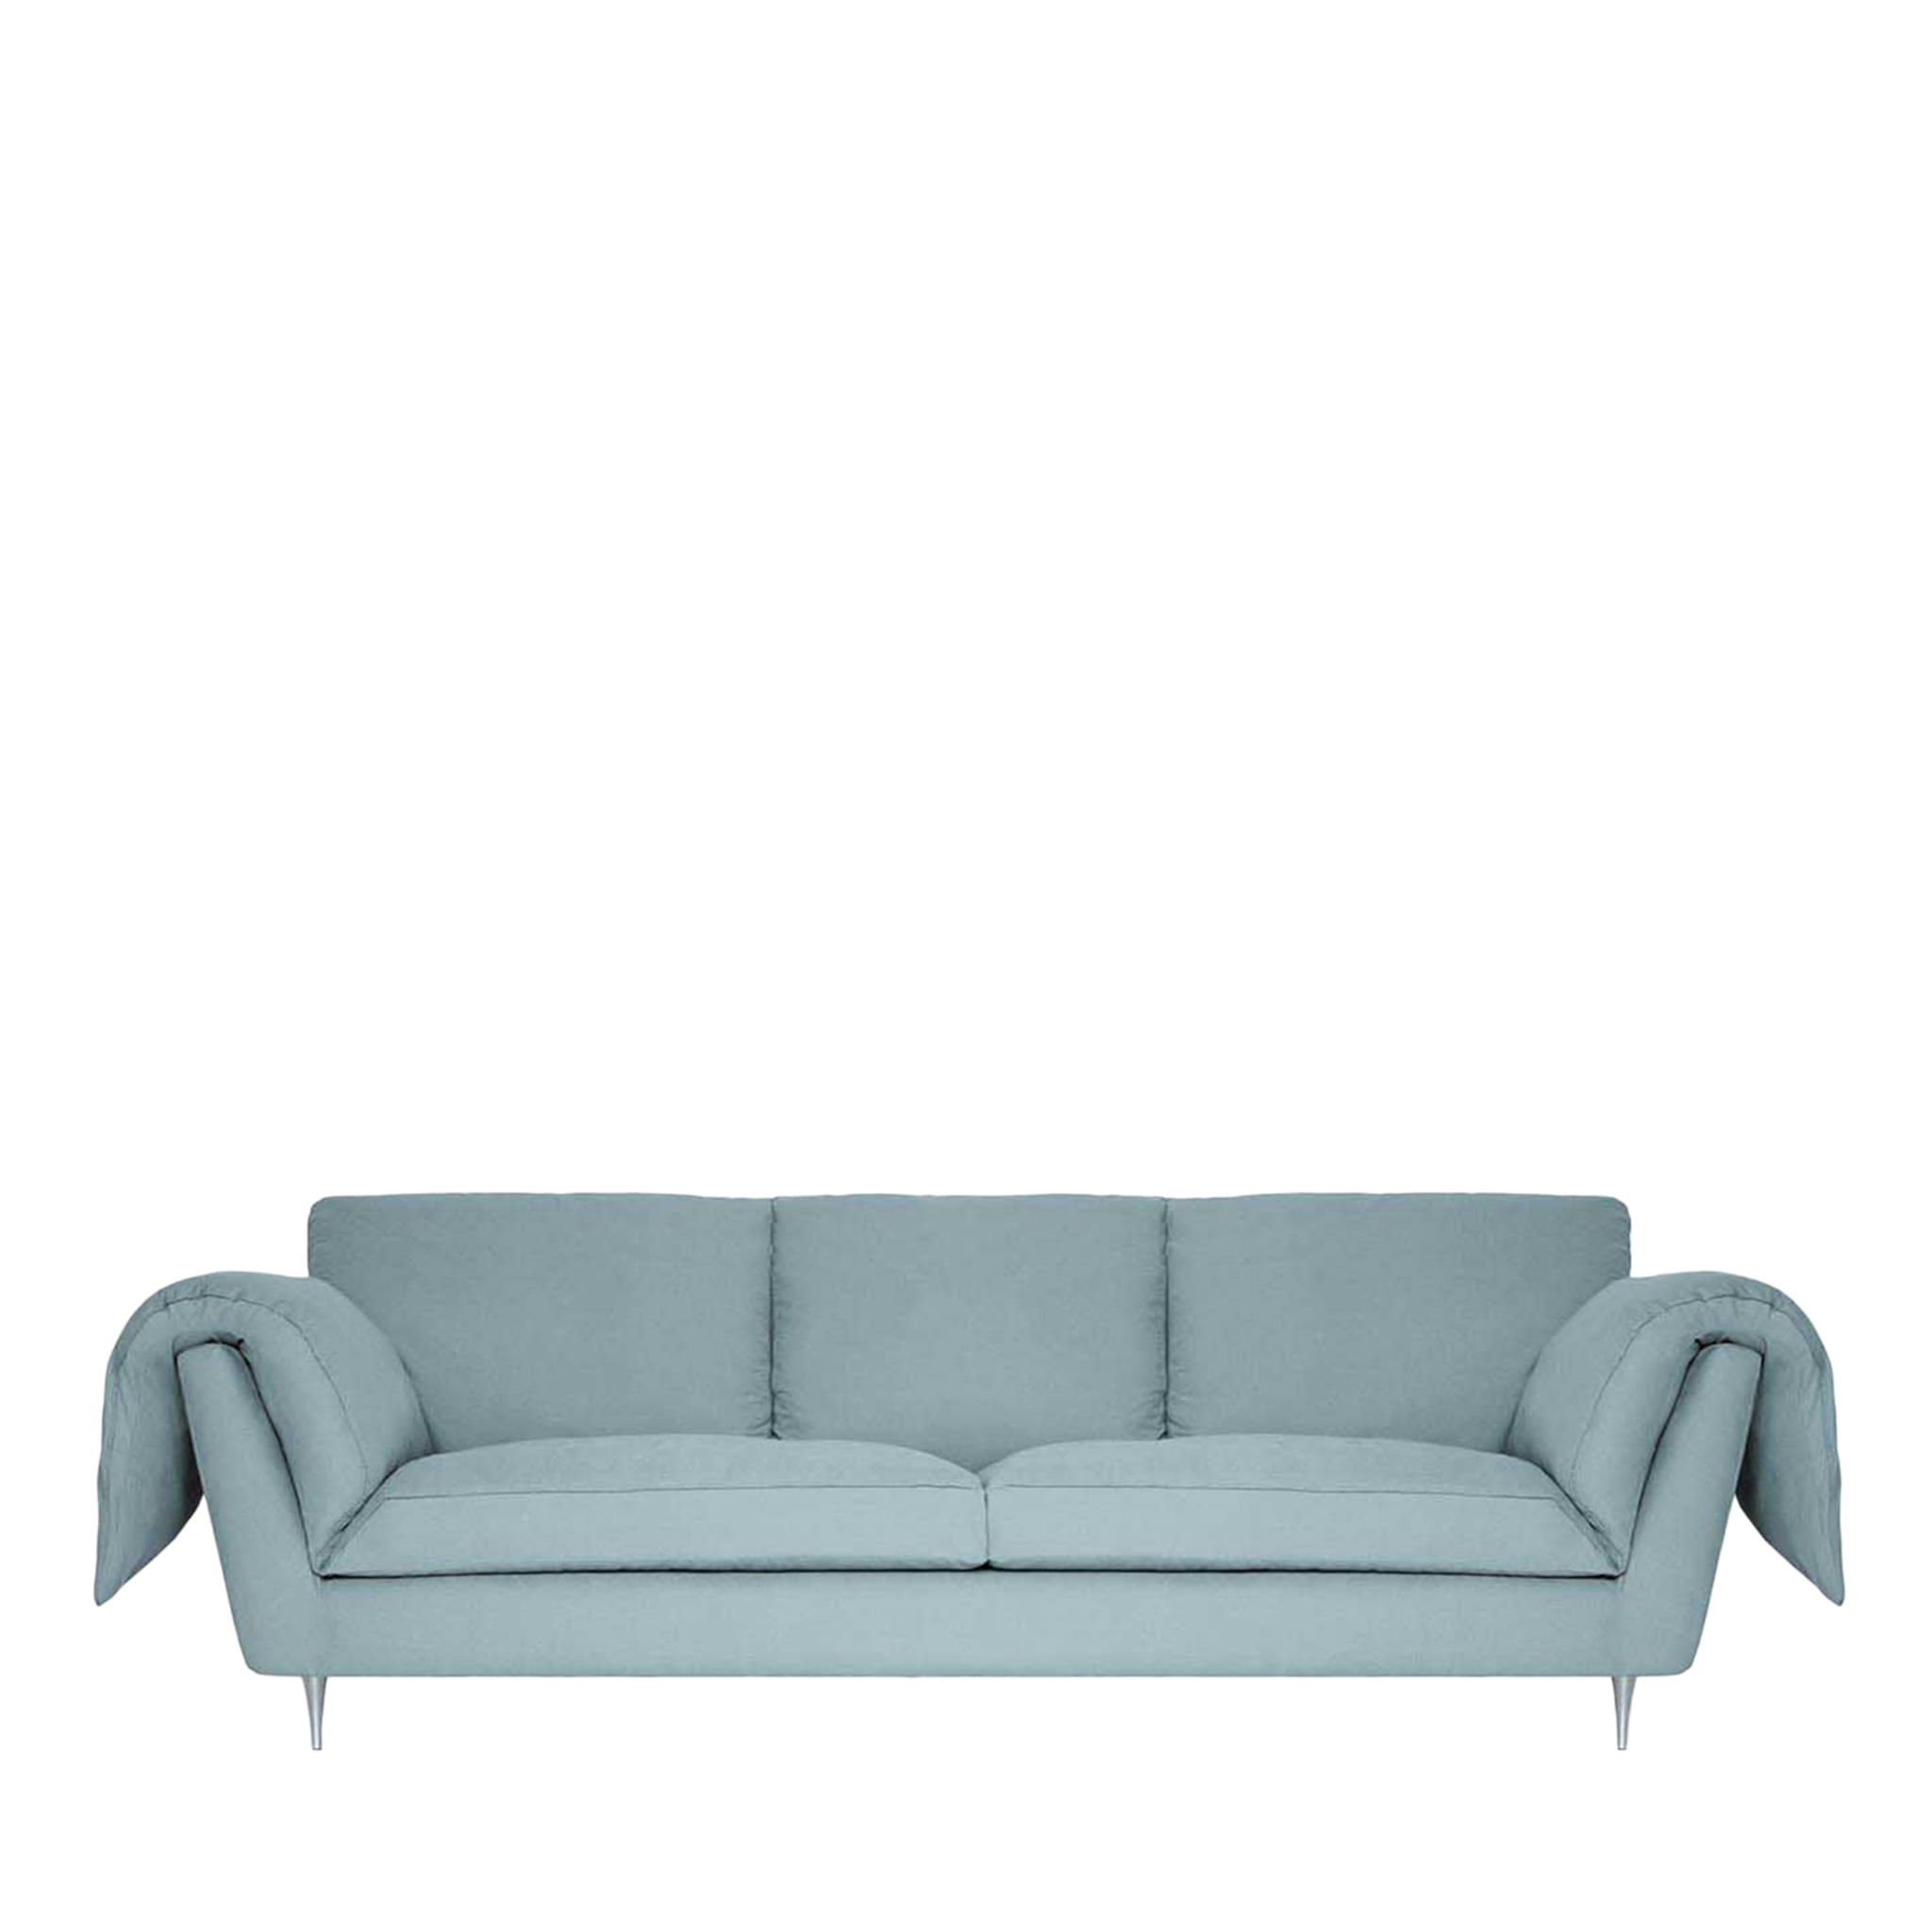 Casquet in Mandelgrün 3-Sitzer Bio Sofa - Hauptansicht